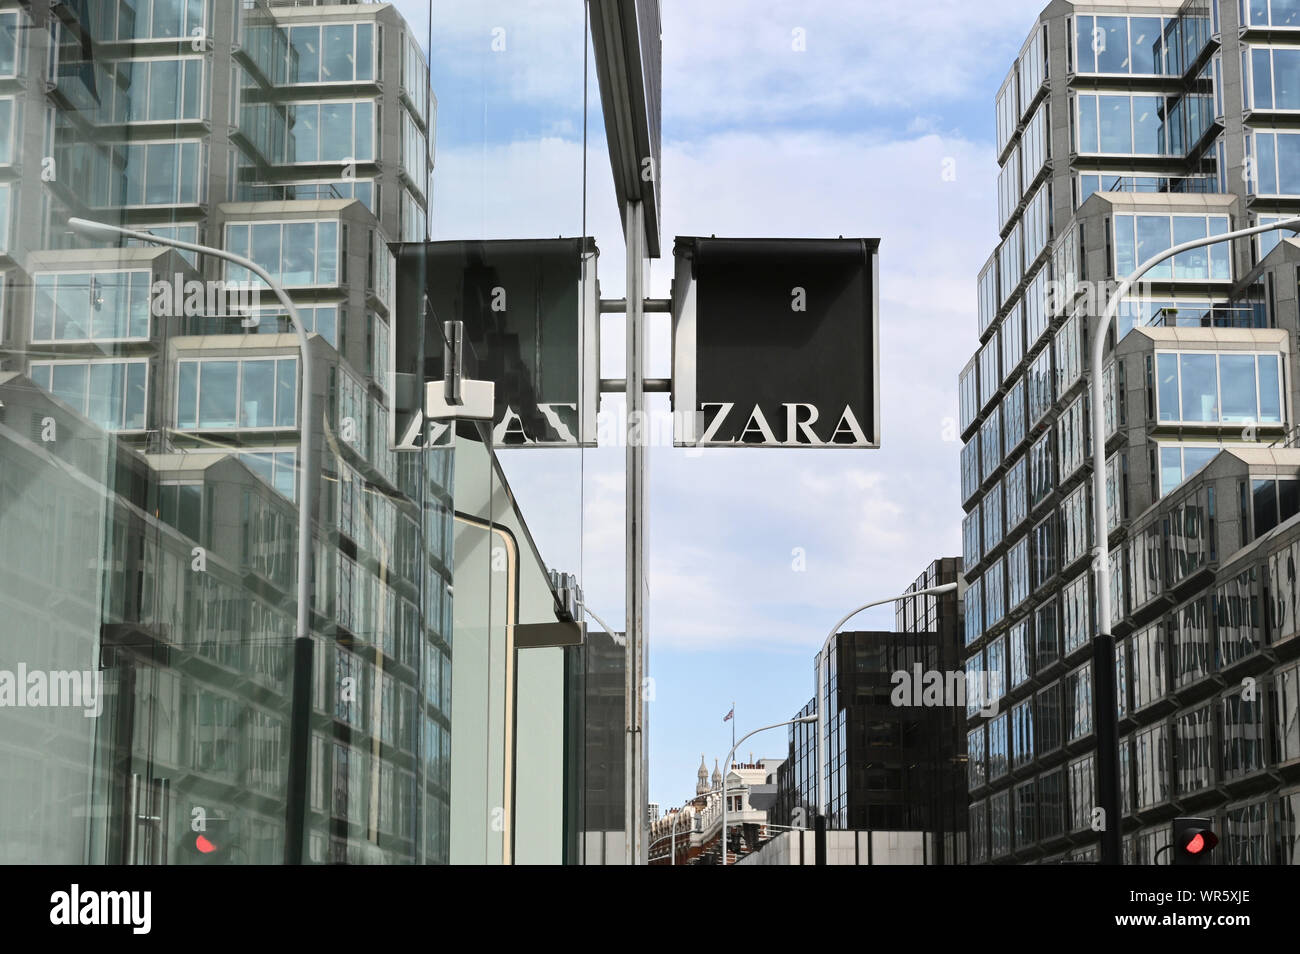 Zara Zara Anmelden Shop Fenster wider. Victoria Street, Victoria, London.  Großbritannien Stockfotografie - Alamy